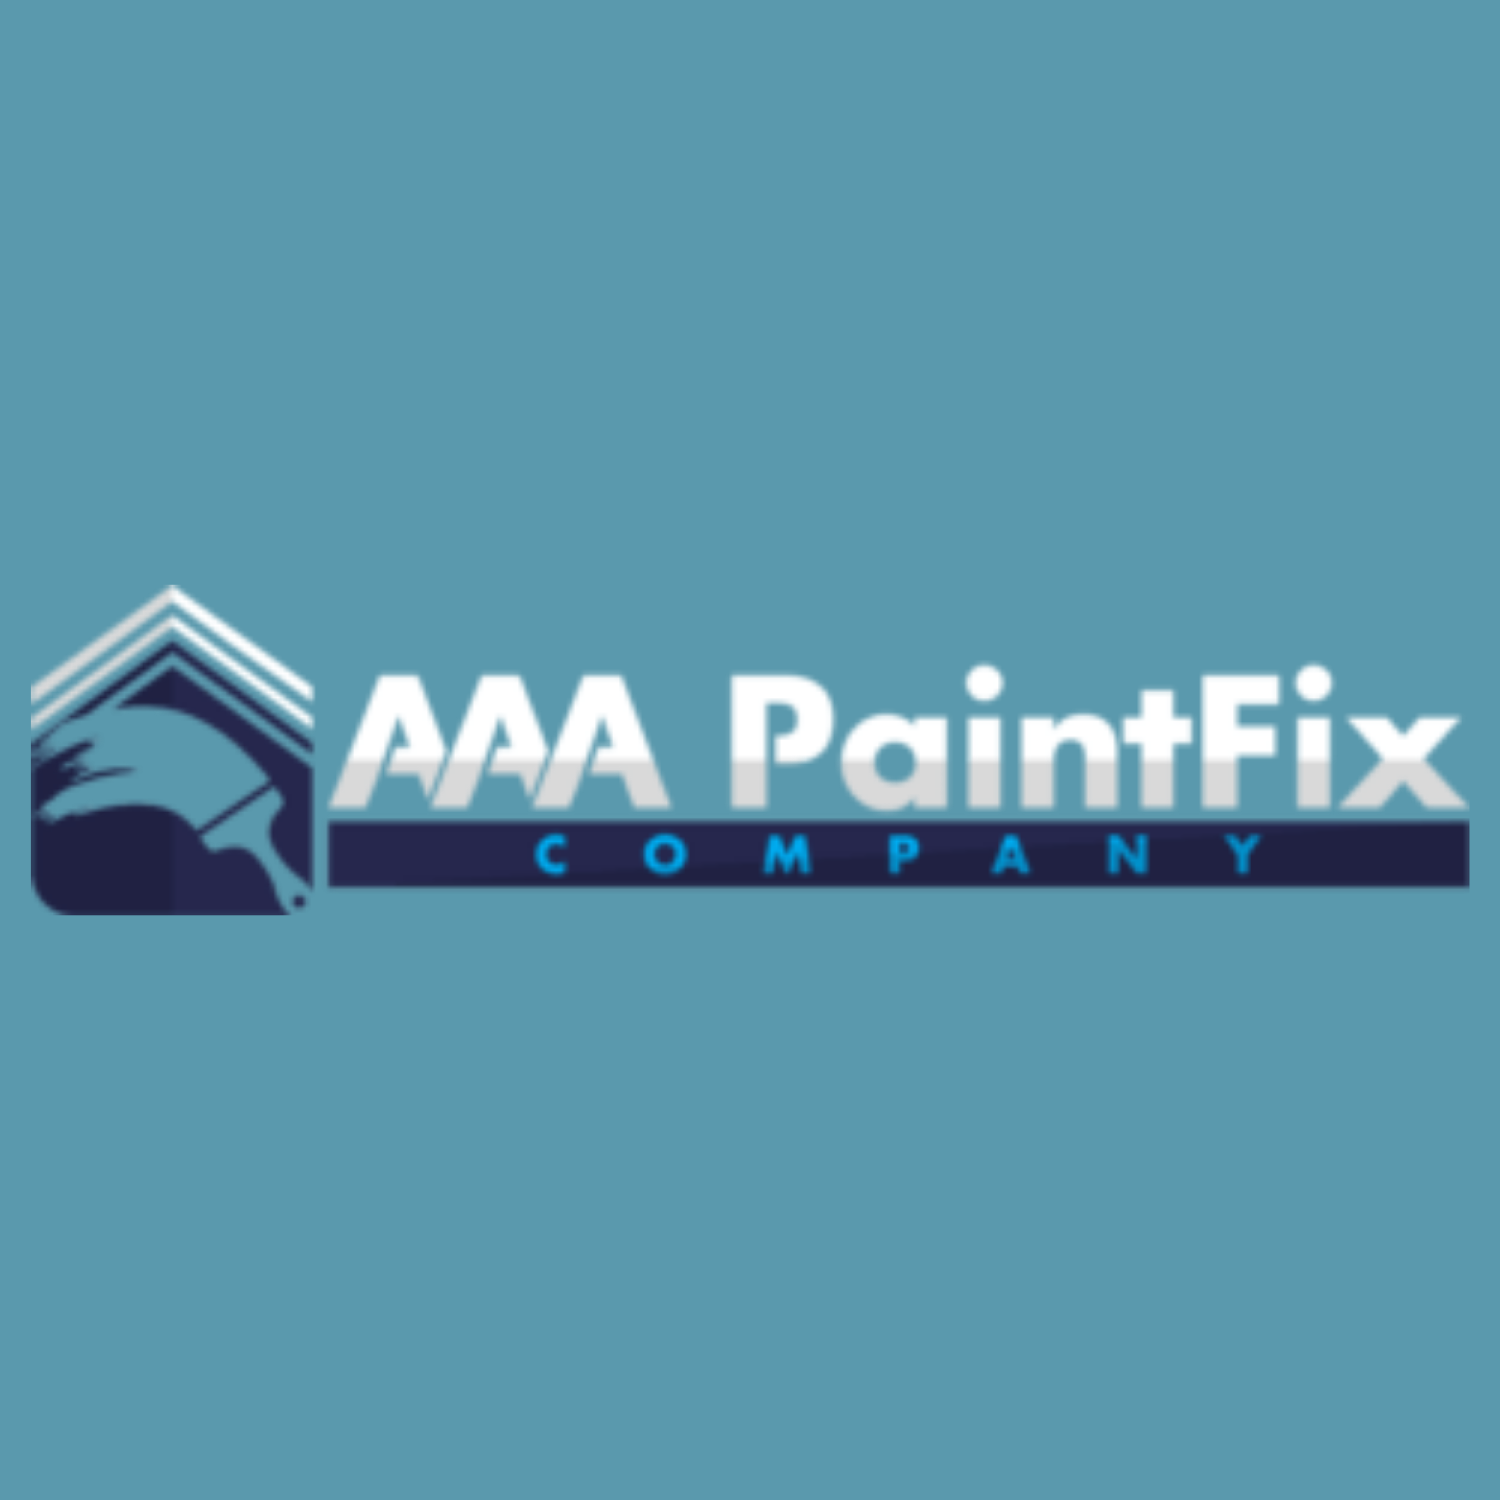 AAA PaintFix Company